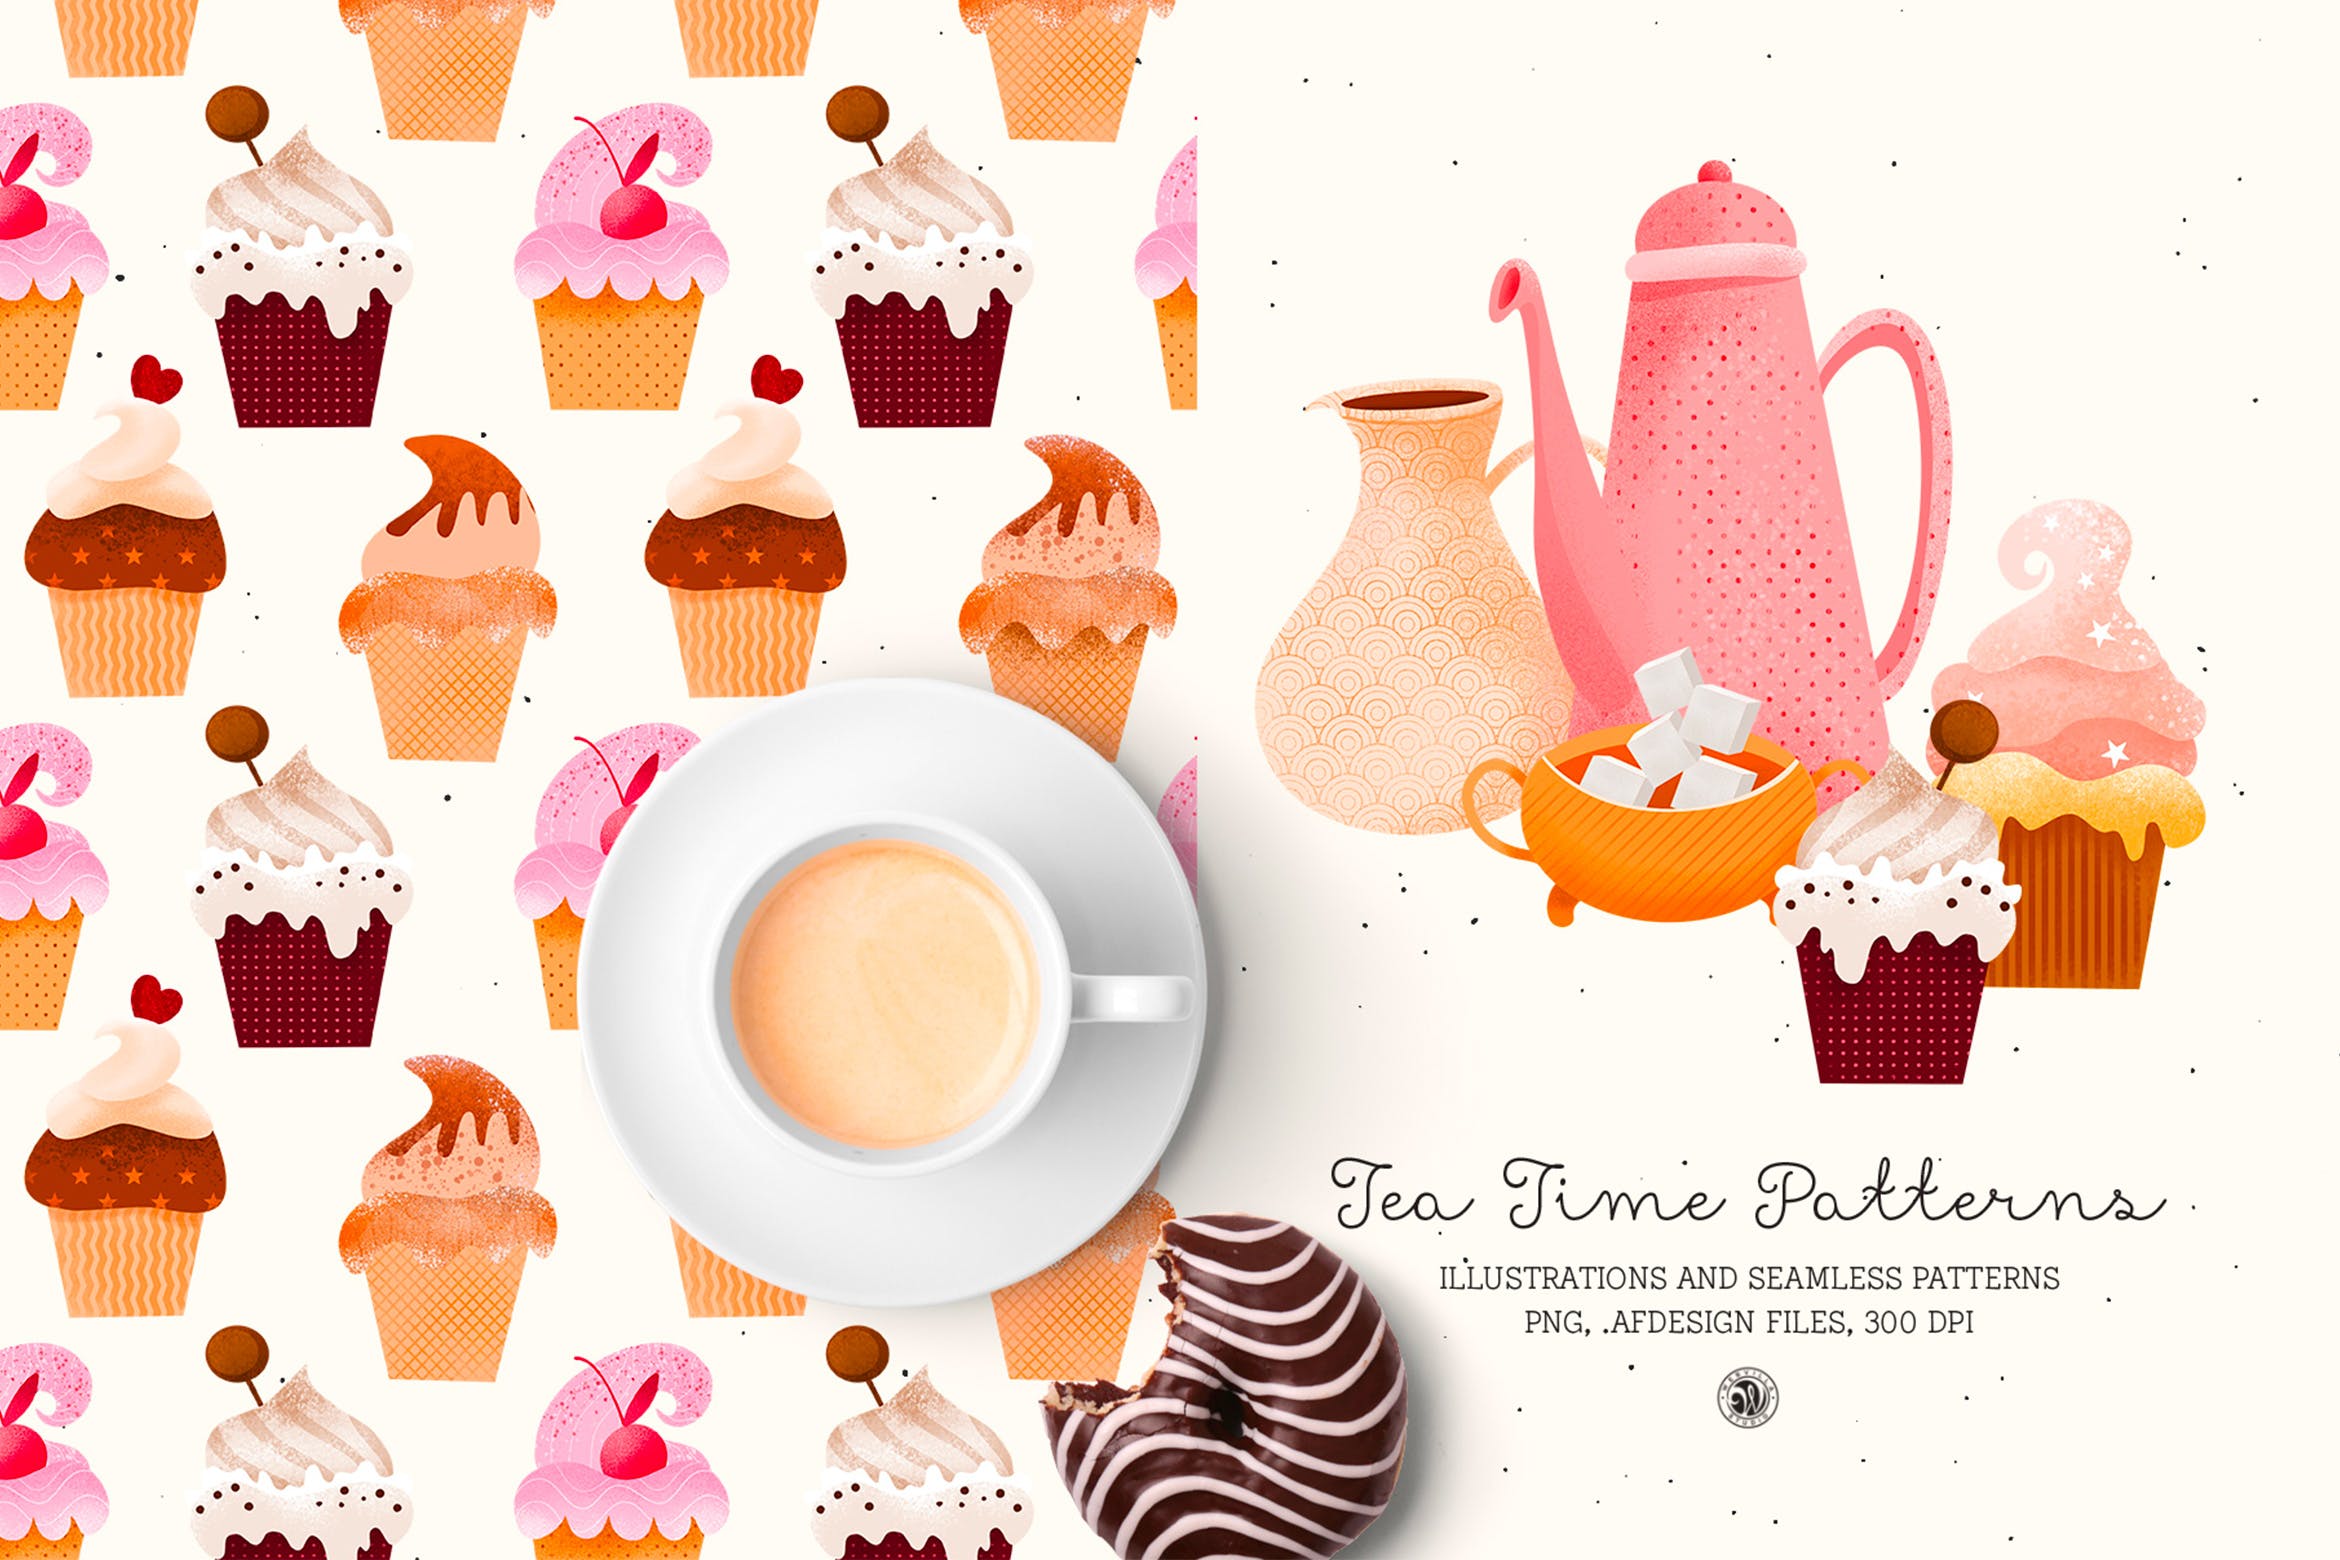 下午茶时光主题点心甜点手绘图案无缝背景素材 Tea Time Patterns插图